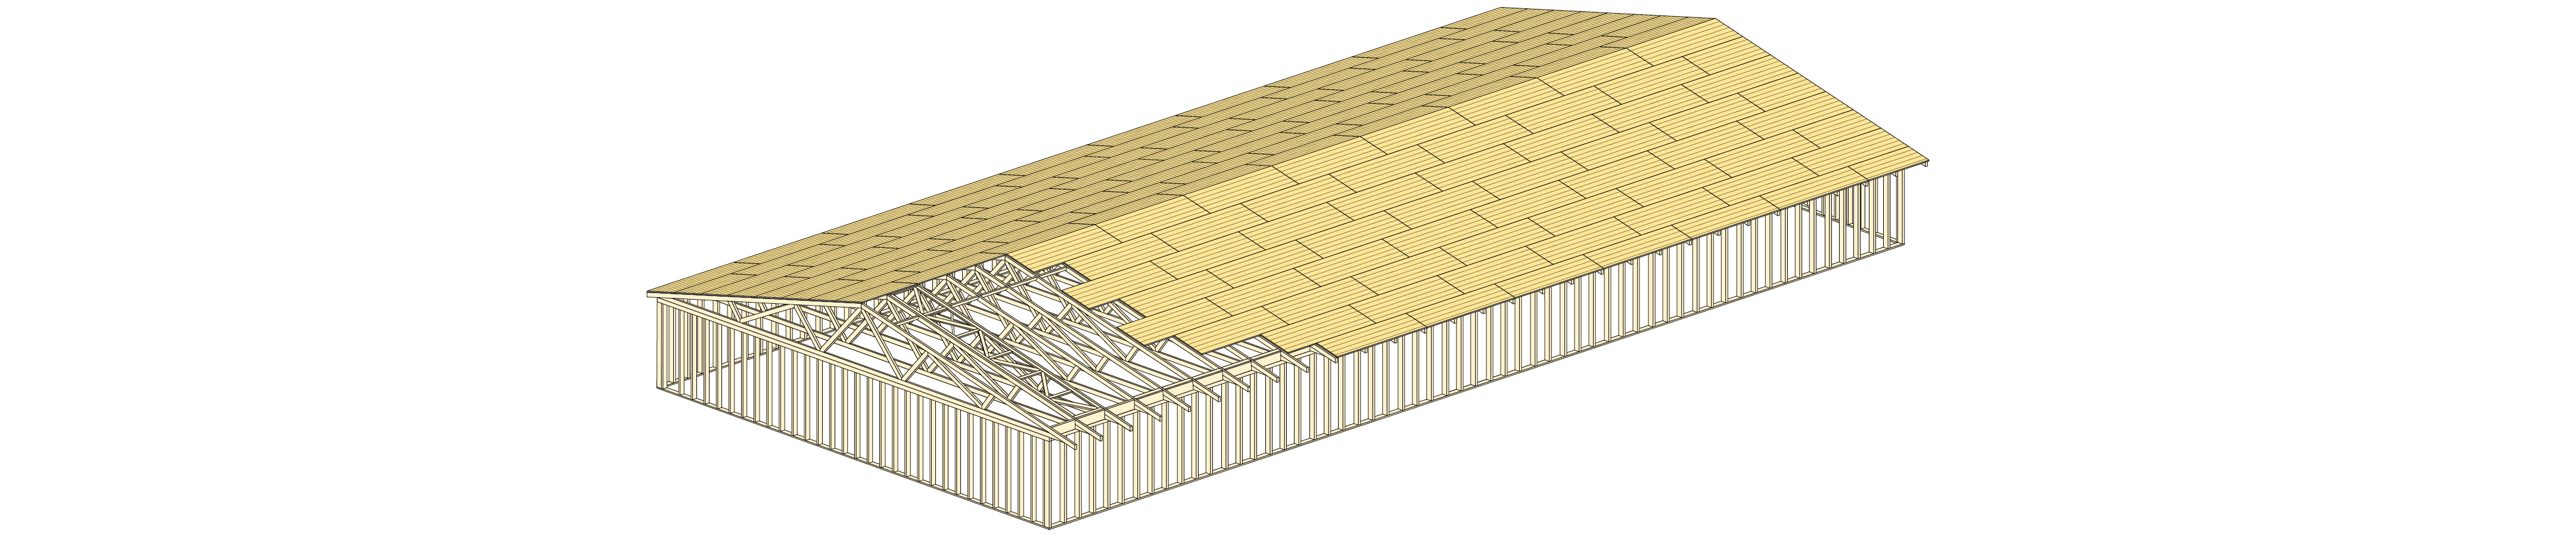 Stabilisering av takkonstruktion med underlagsspontsluckor eller takplywoodskivor.